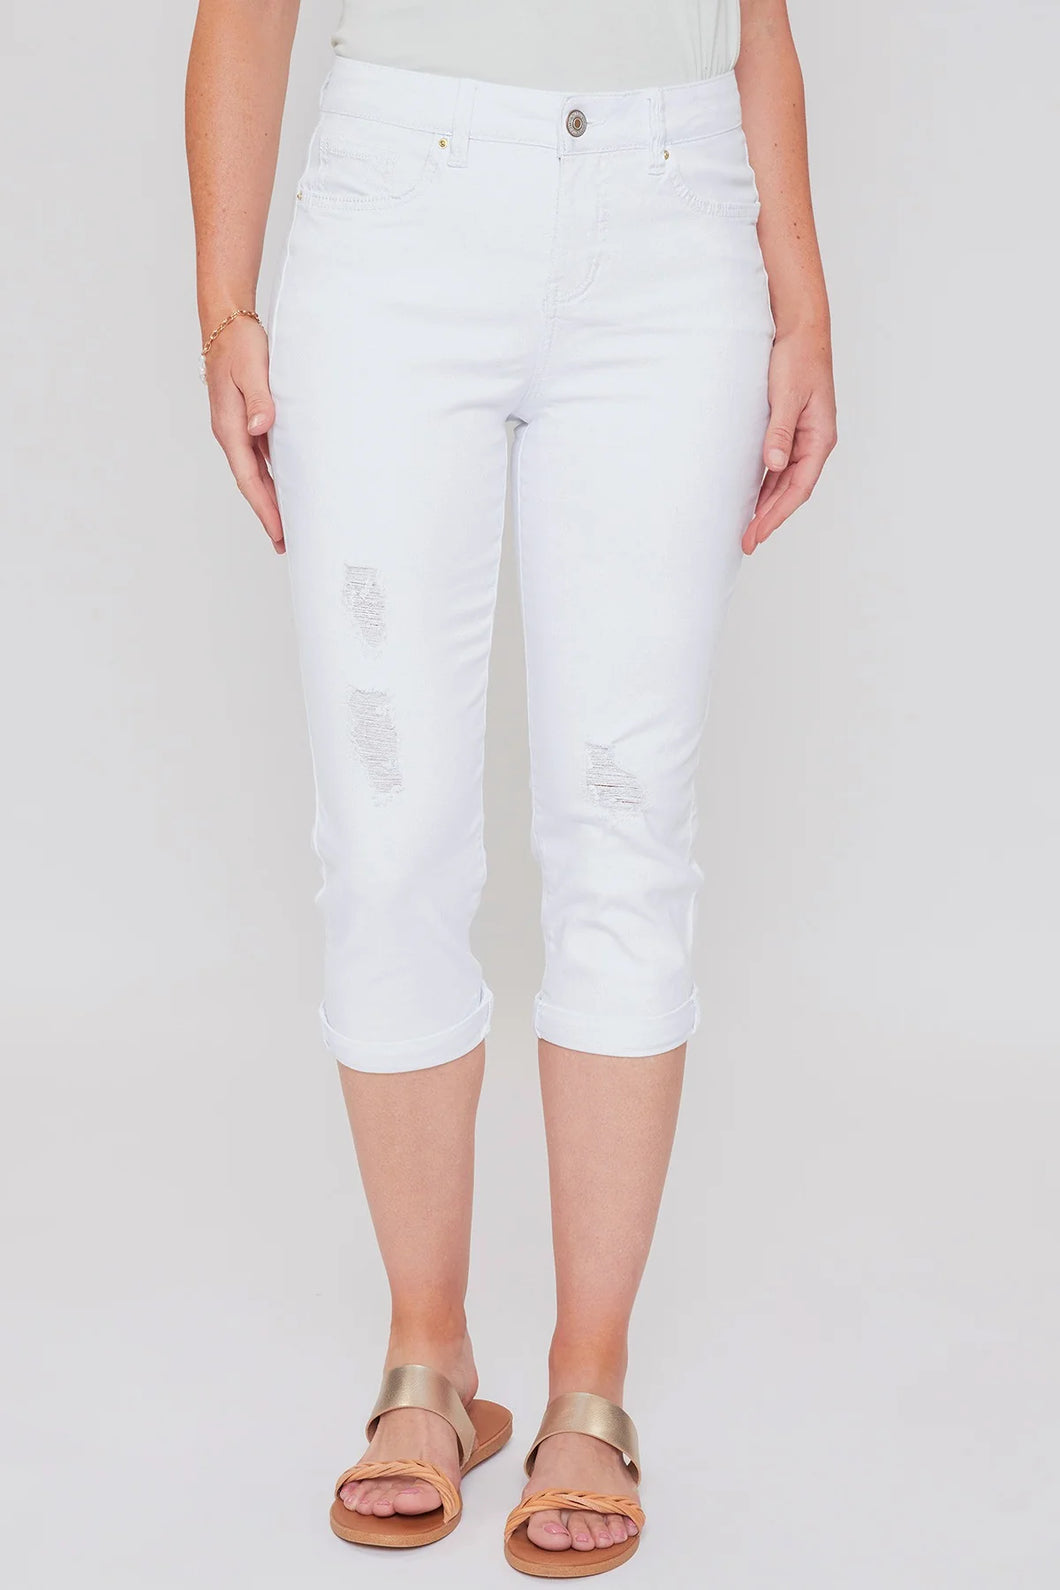 White Slim Stretch High Waist Capri Jeans by YMI with Tummy Control- Women's